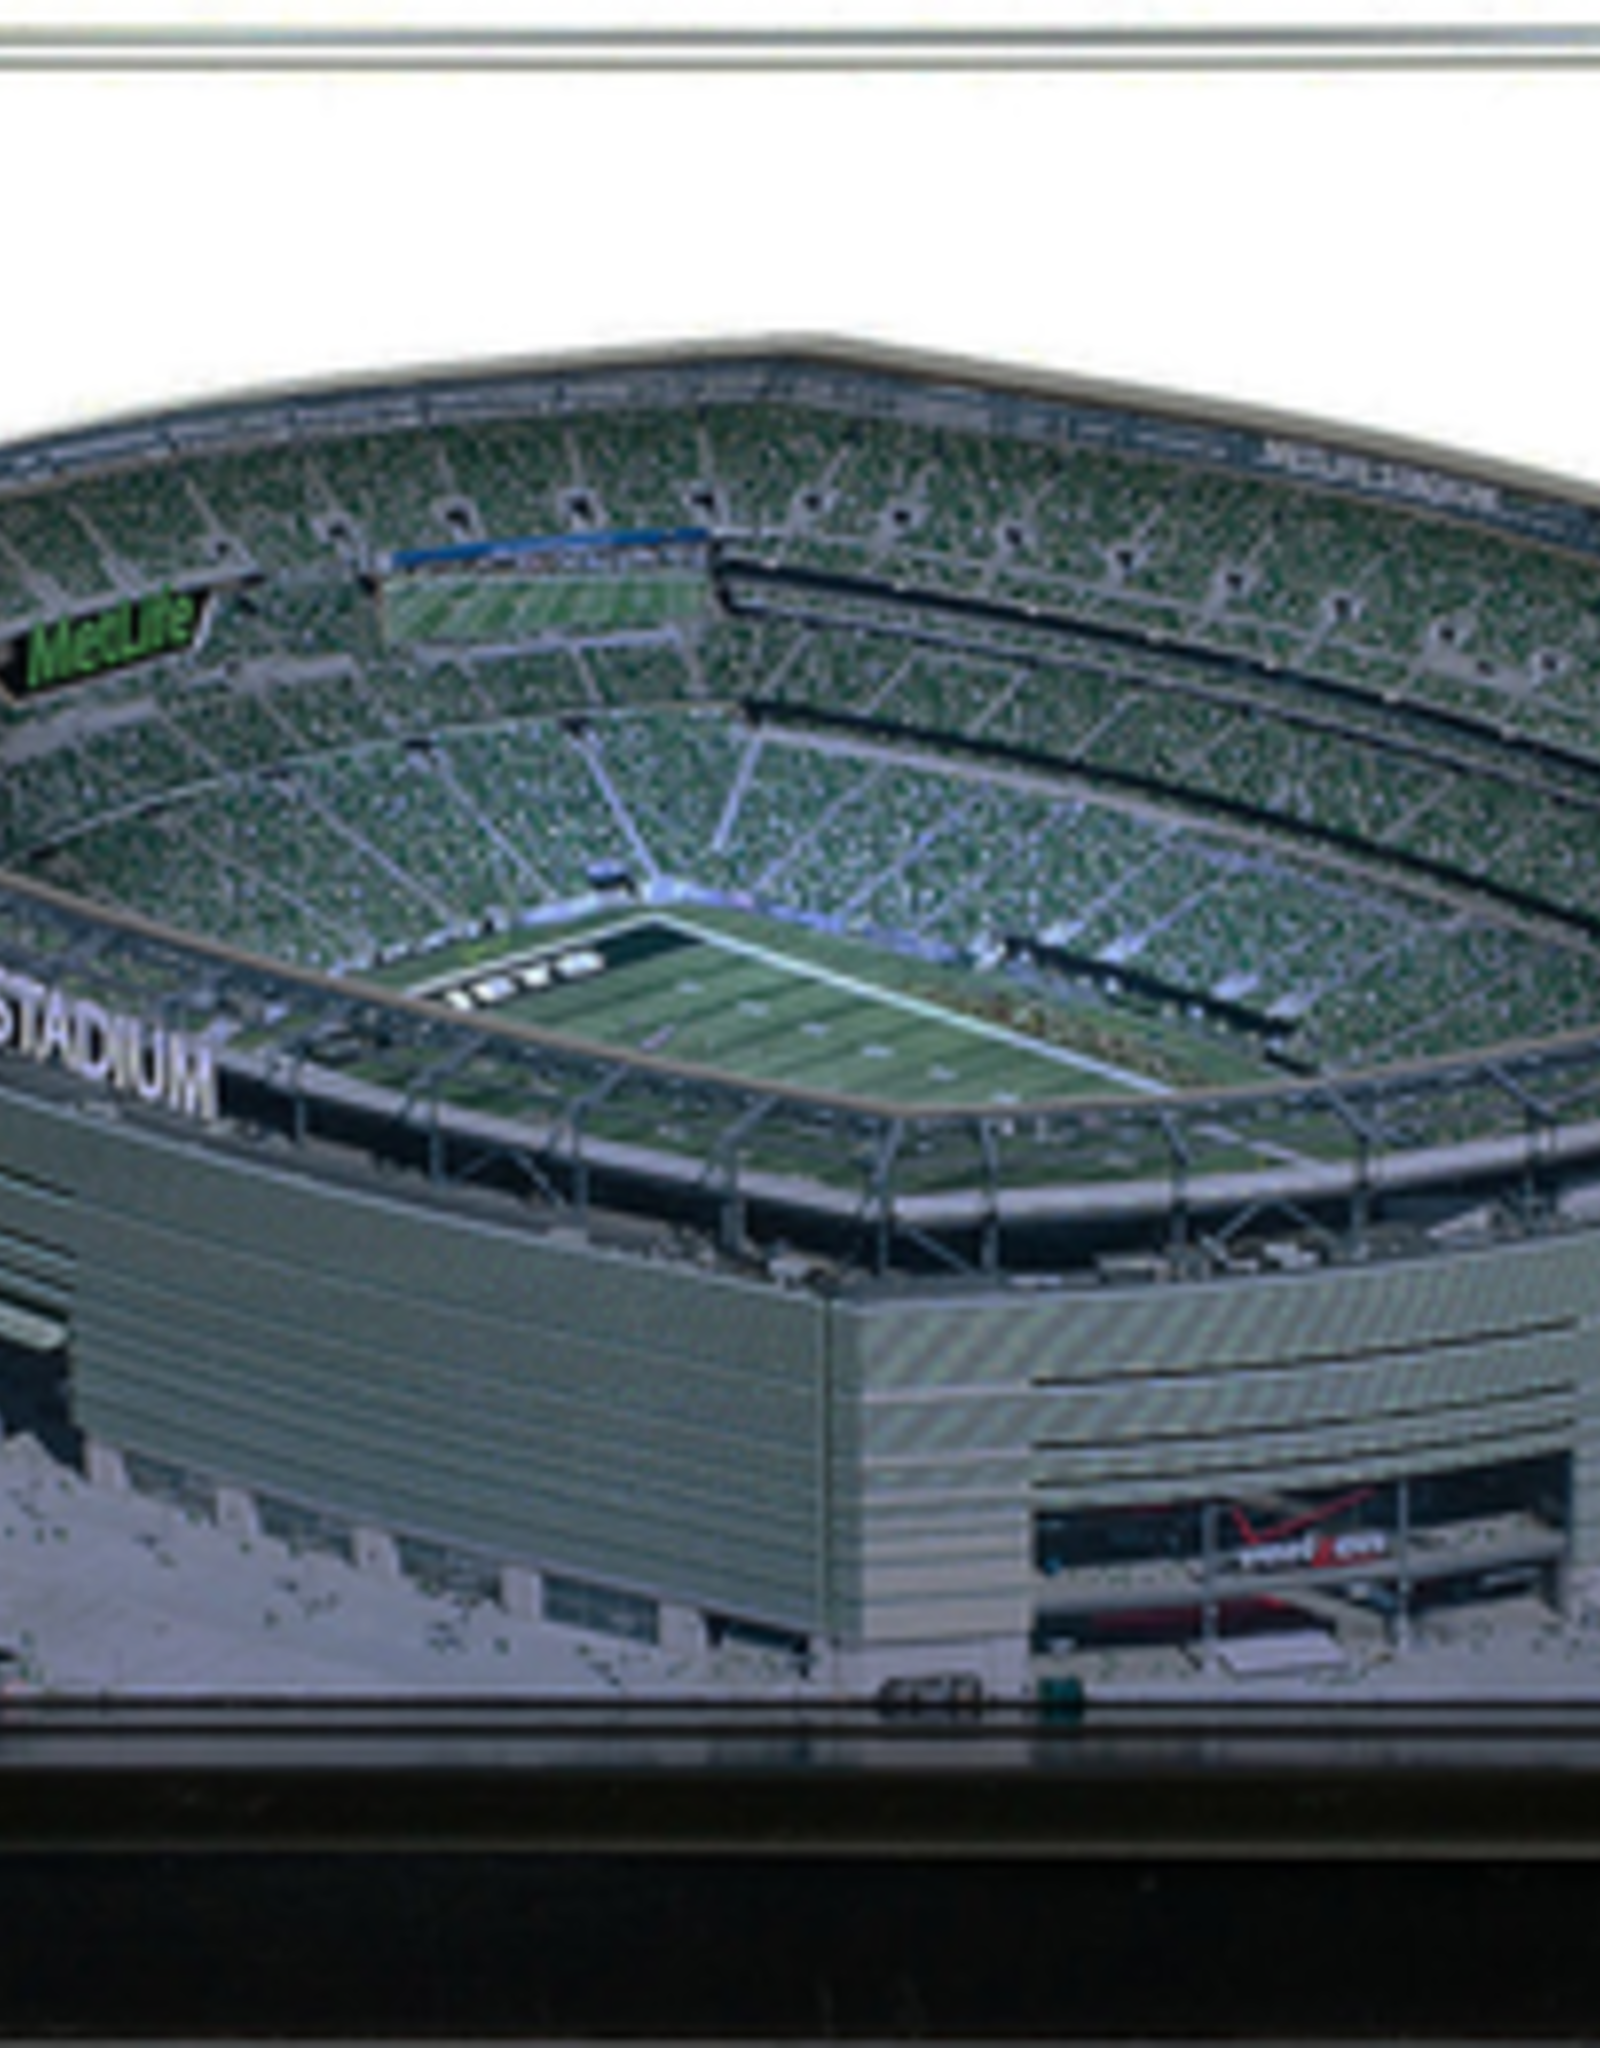 HOMEFIELDS Jets HomeField - Metlife Stadium 9IN